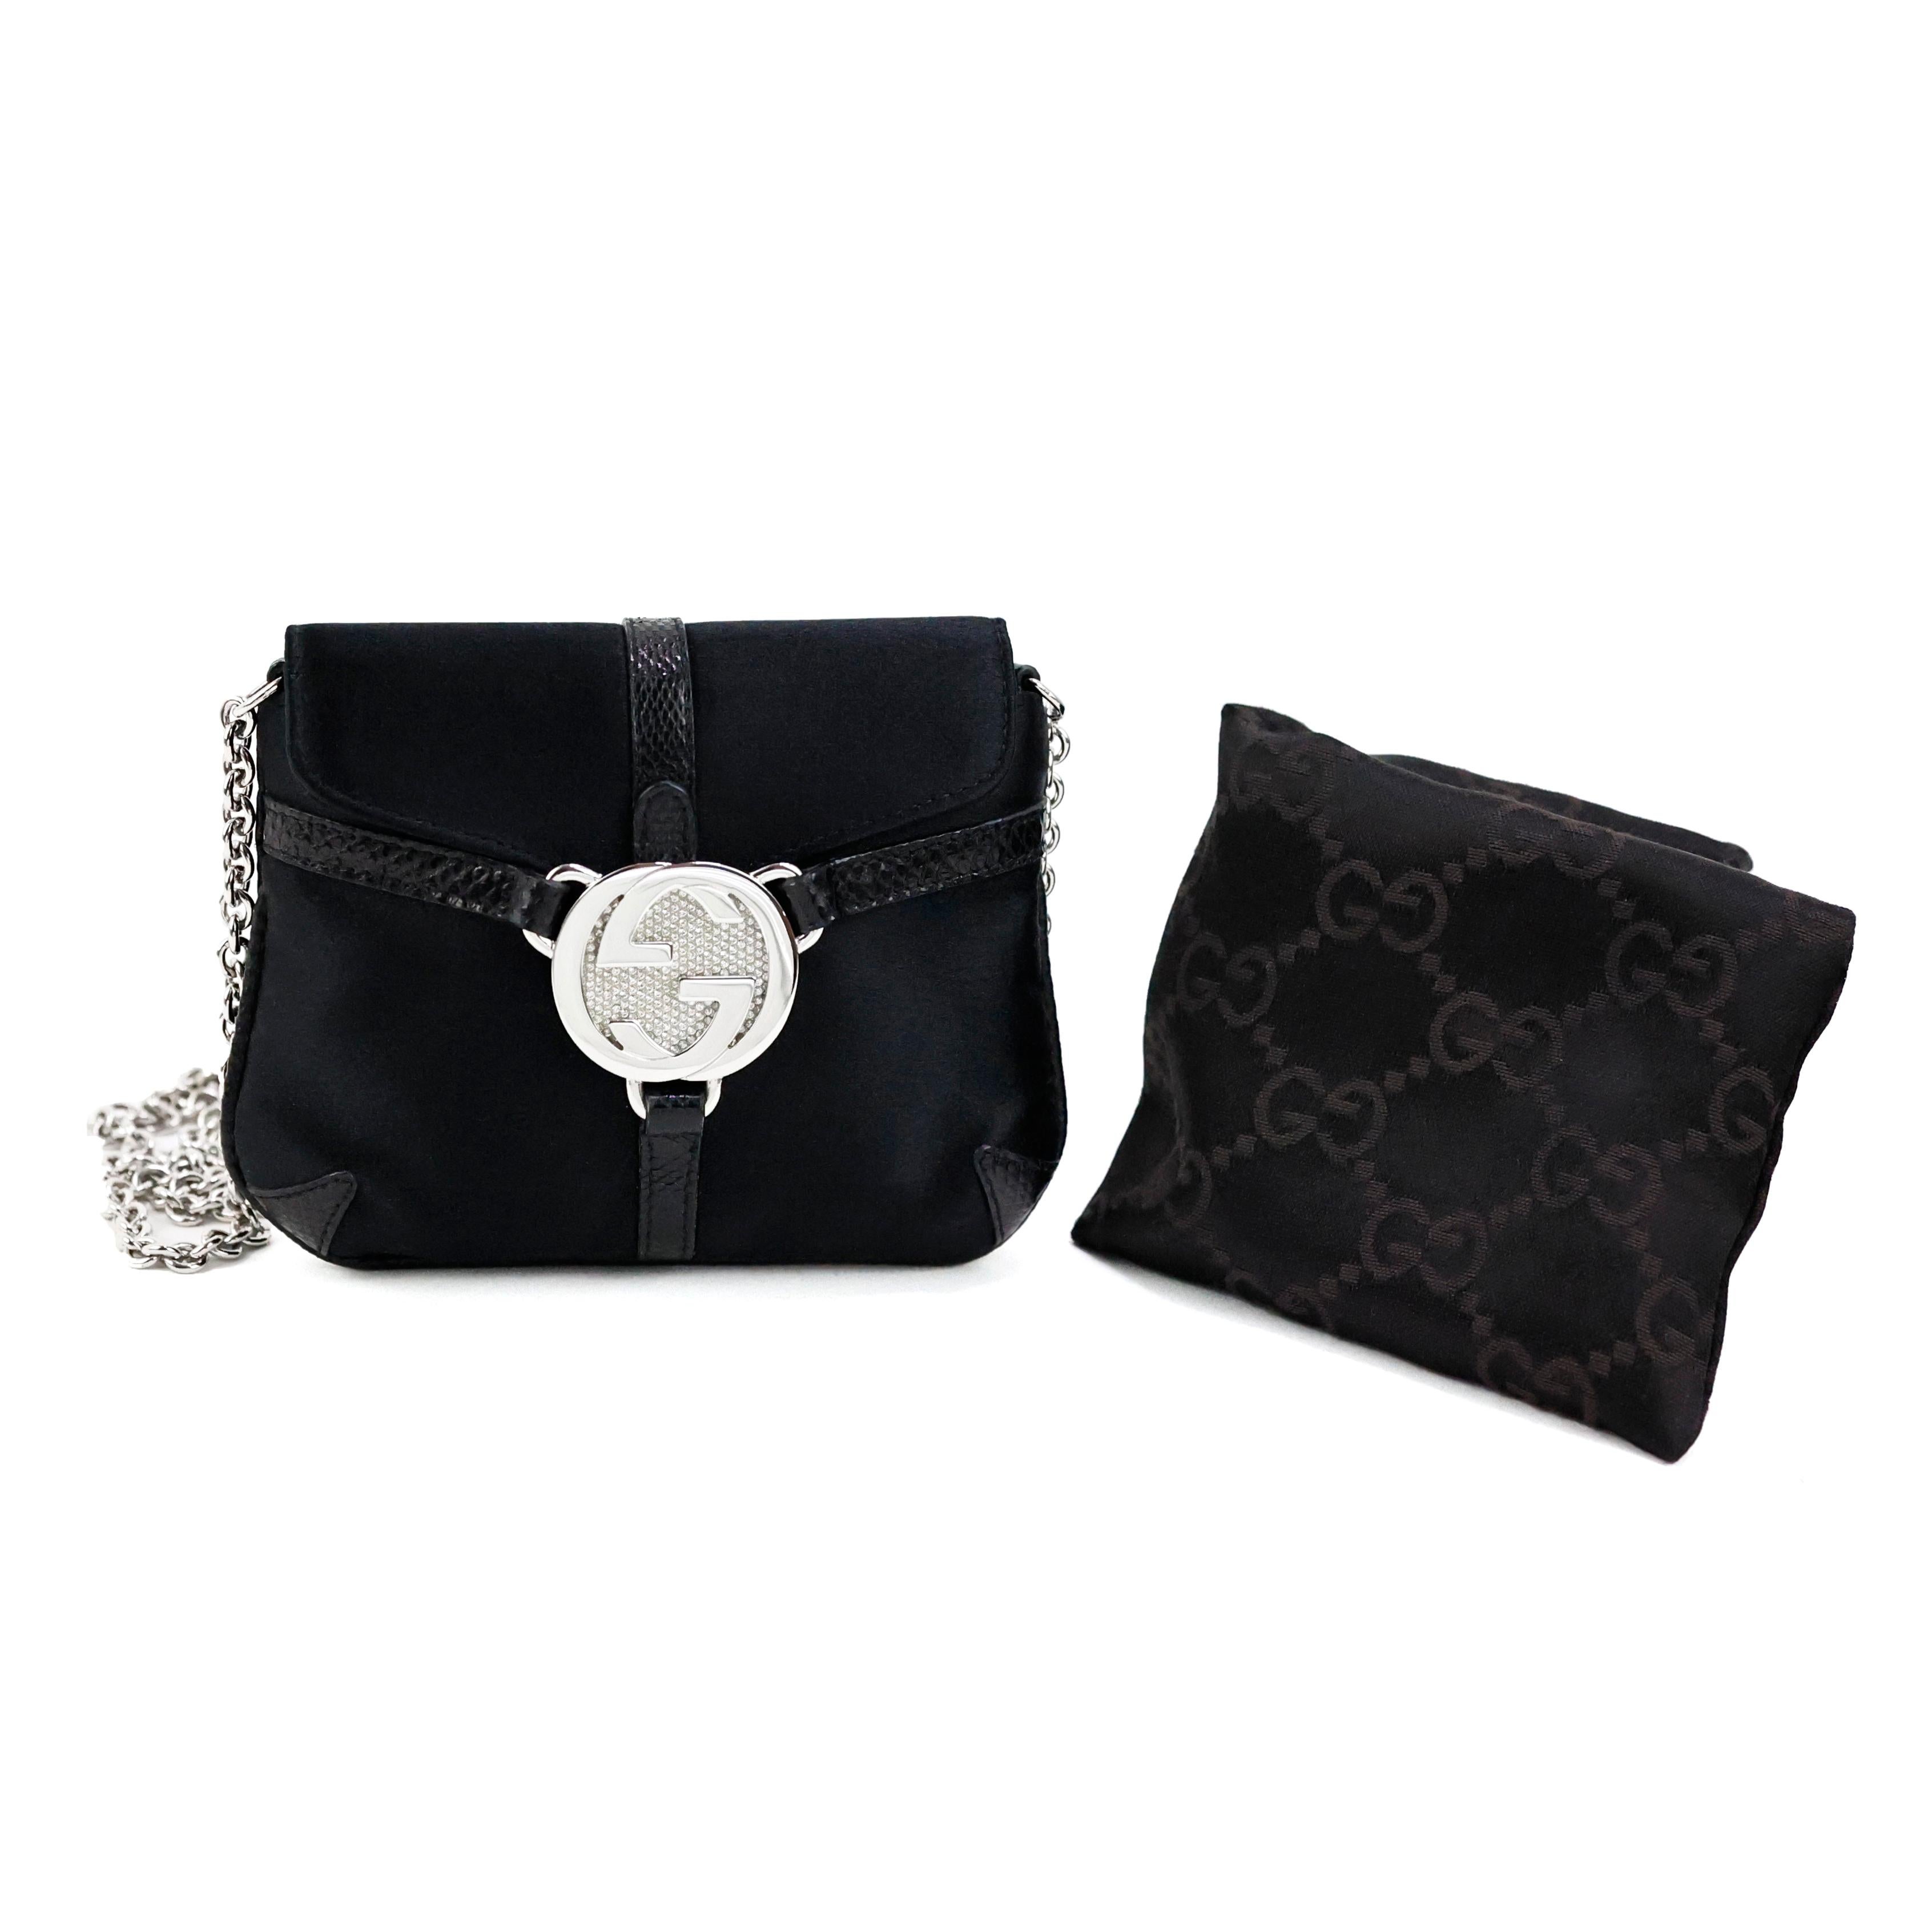 Rare Gucci by Tom Ford mini GG sac crossbody en soie embelli de cristaux imbriqués, couleur noir, quincaillerie argentée.

Condit :
Excellent.

Emballage/accessoires :
Sac à poussière.

Mesures :
15cm x 12cm